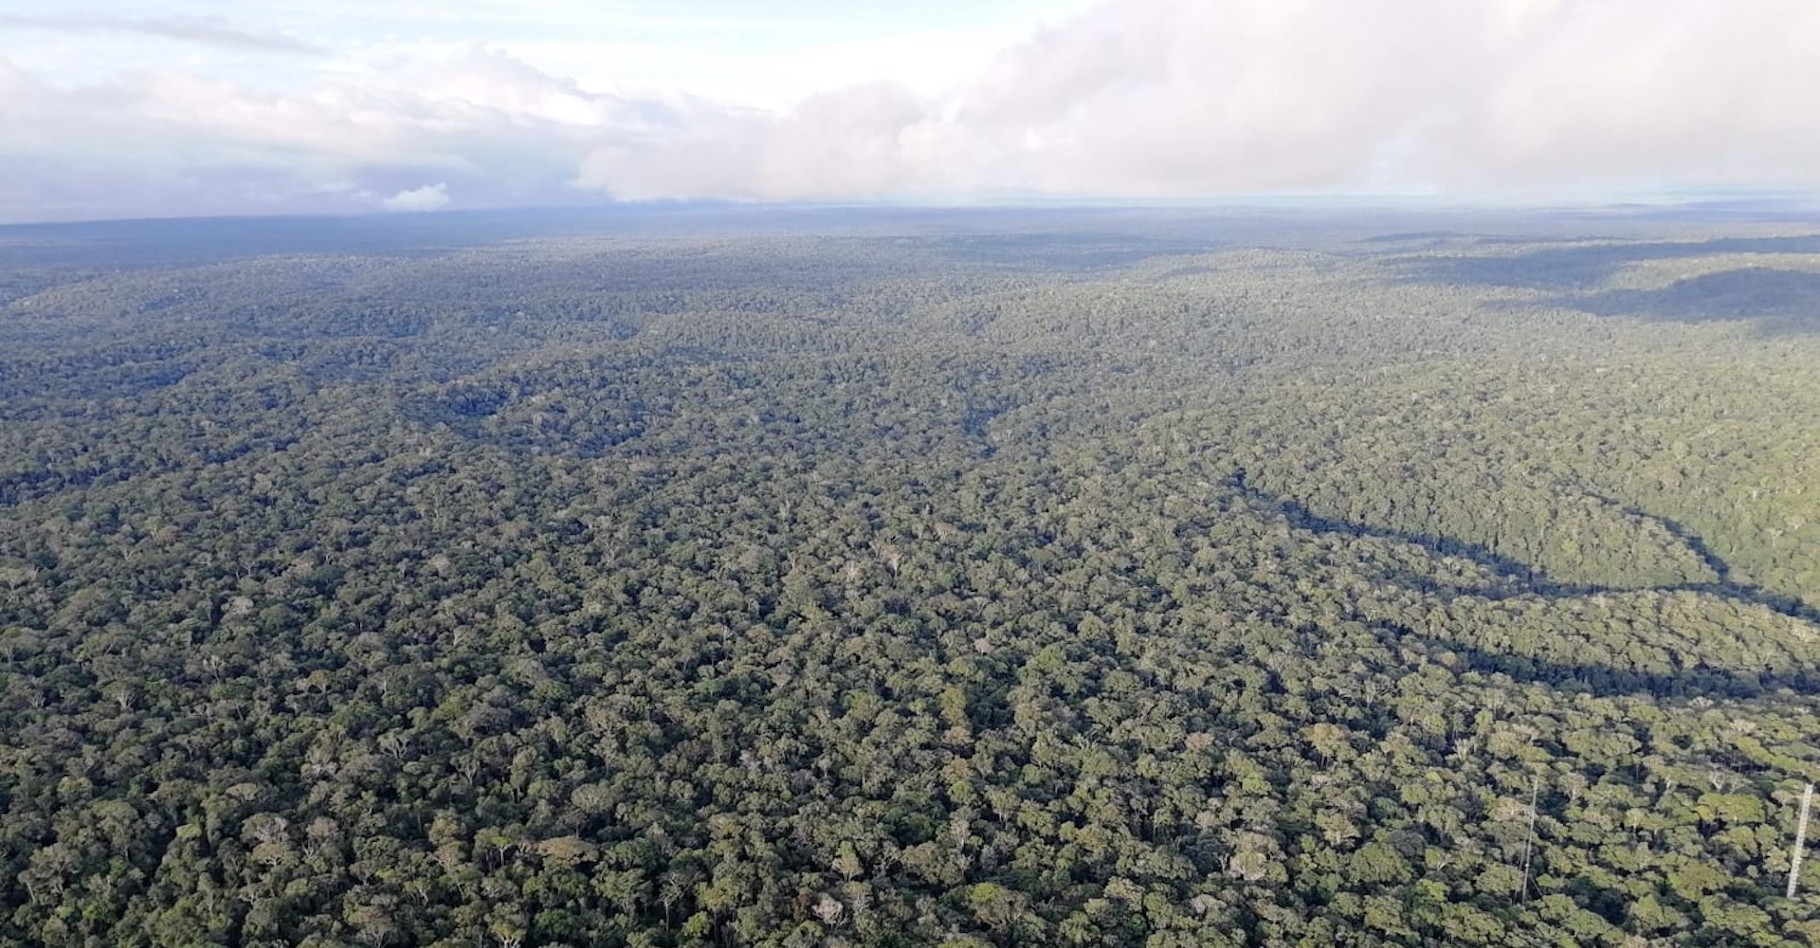 Des chercheurs de l’université de Leeds (Royaume-Uni) montrent comment la déforestation assèche les tropiques. Au cœur de la forêt amazonienne — ici en photo – comme ailleurs. © Jess Baker, University of Leeds